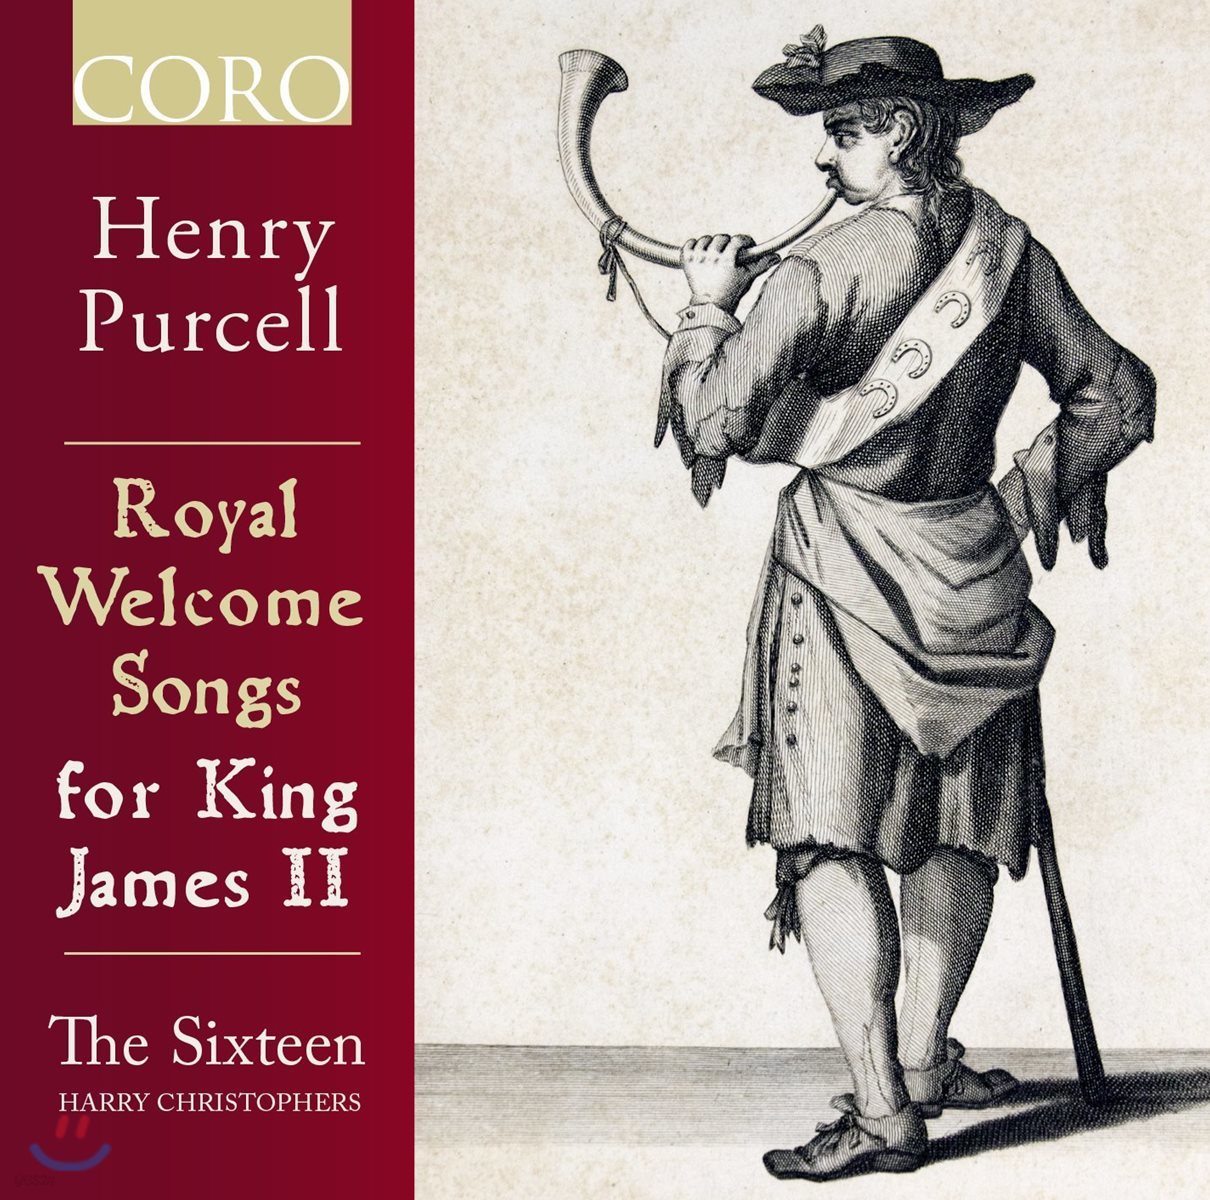 The Sixteen 헨리 퍼셀: 제임스 2세를 위한 왕실 환영 음악 - 더 식스틴, 해리 크리스토퍼스 (Henry Purcell: Royal Welcome Songs for King James II)